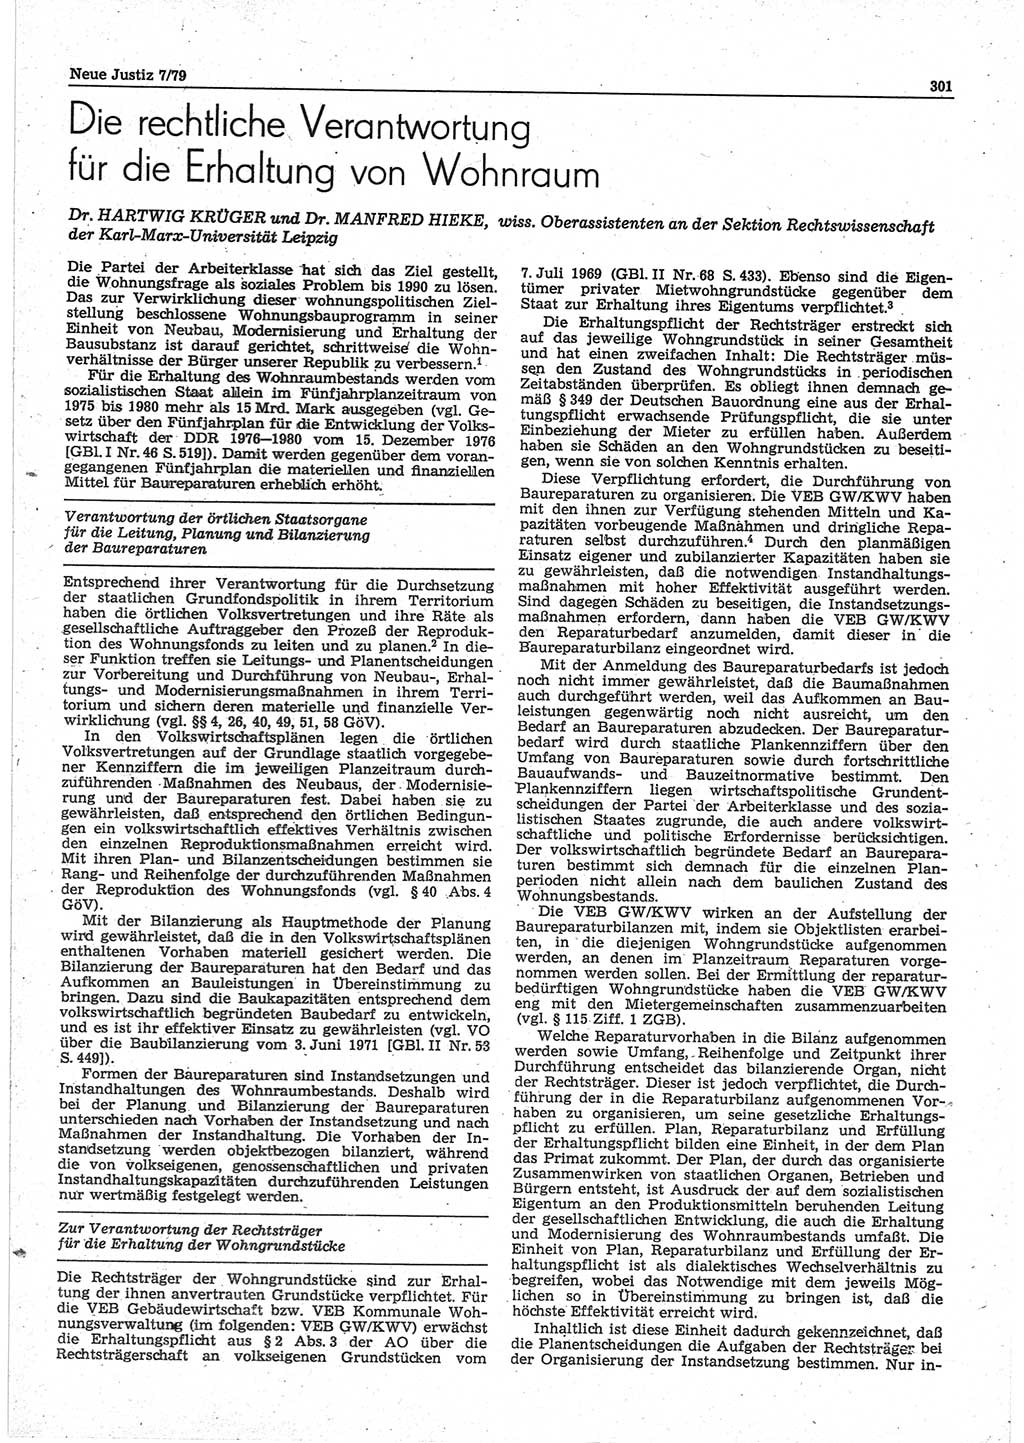 Neue Justiz (NJ), Zeitschrift für sozialistisches Recht und Gesetzlichkeit [Deutsche Demokratische Republik (DDR)], 33. Jahrgang 1979, Seite 301 (NJ DDR 1979, S. 301)